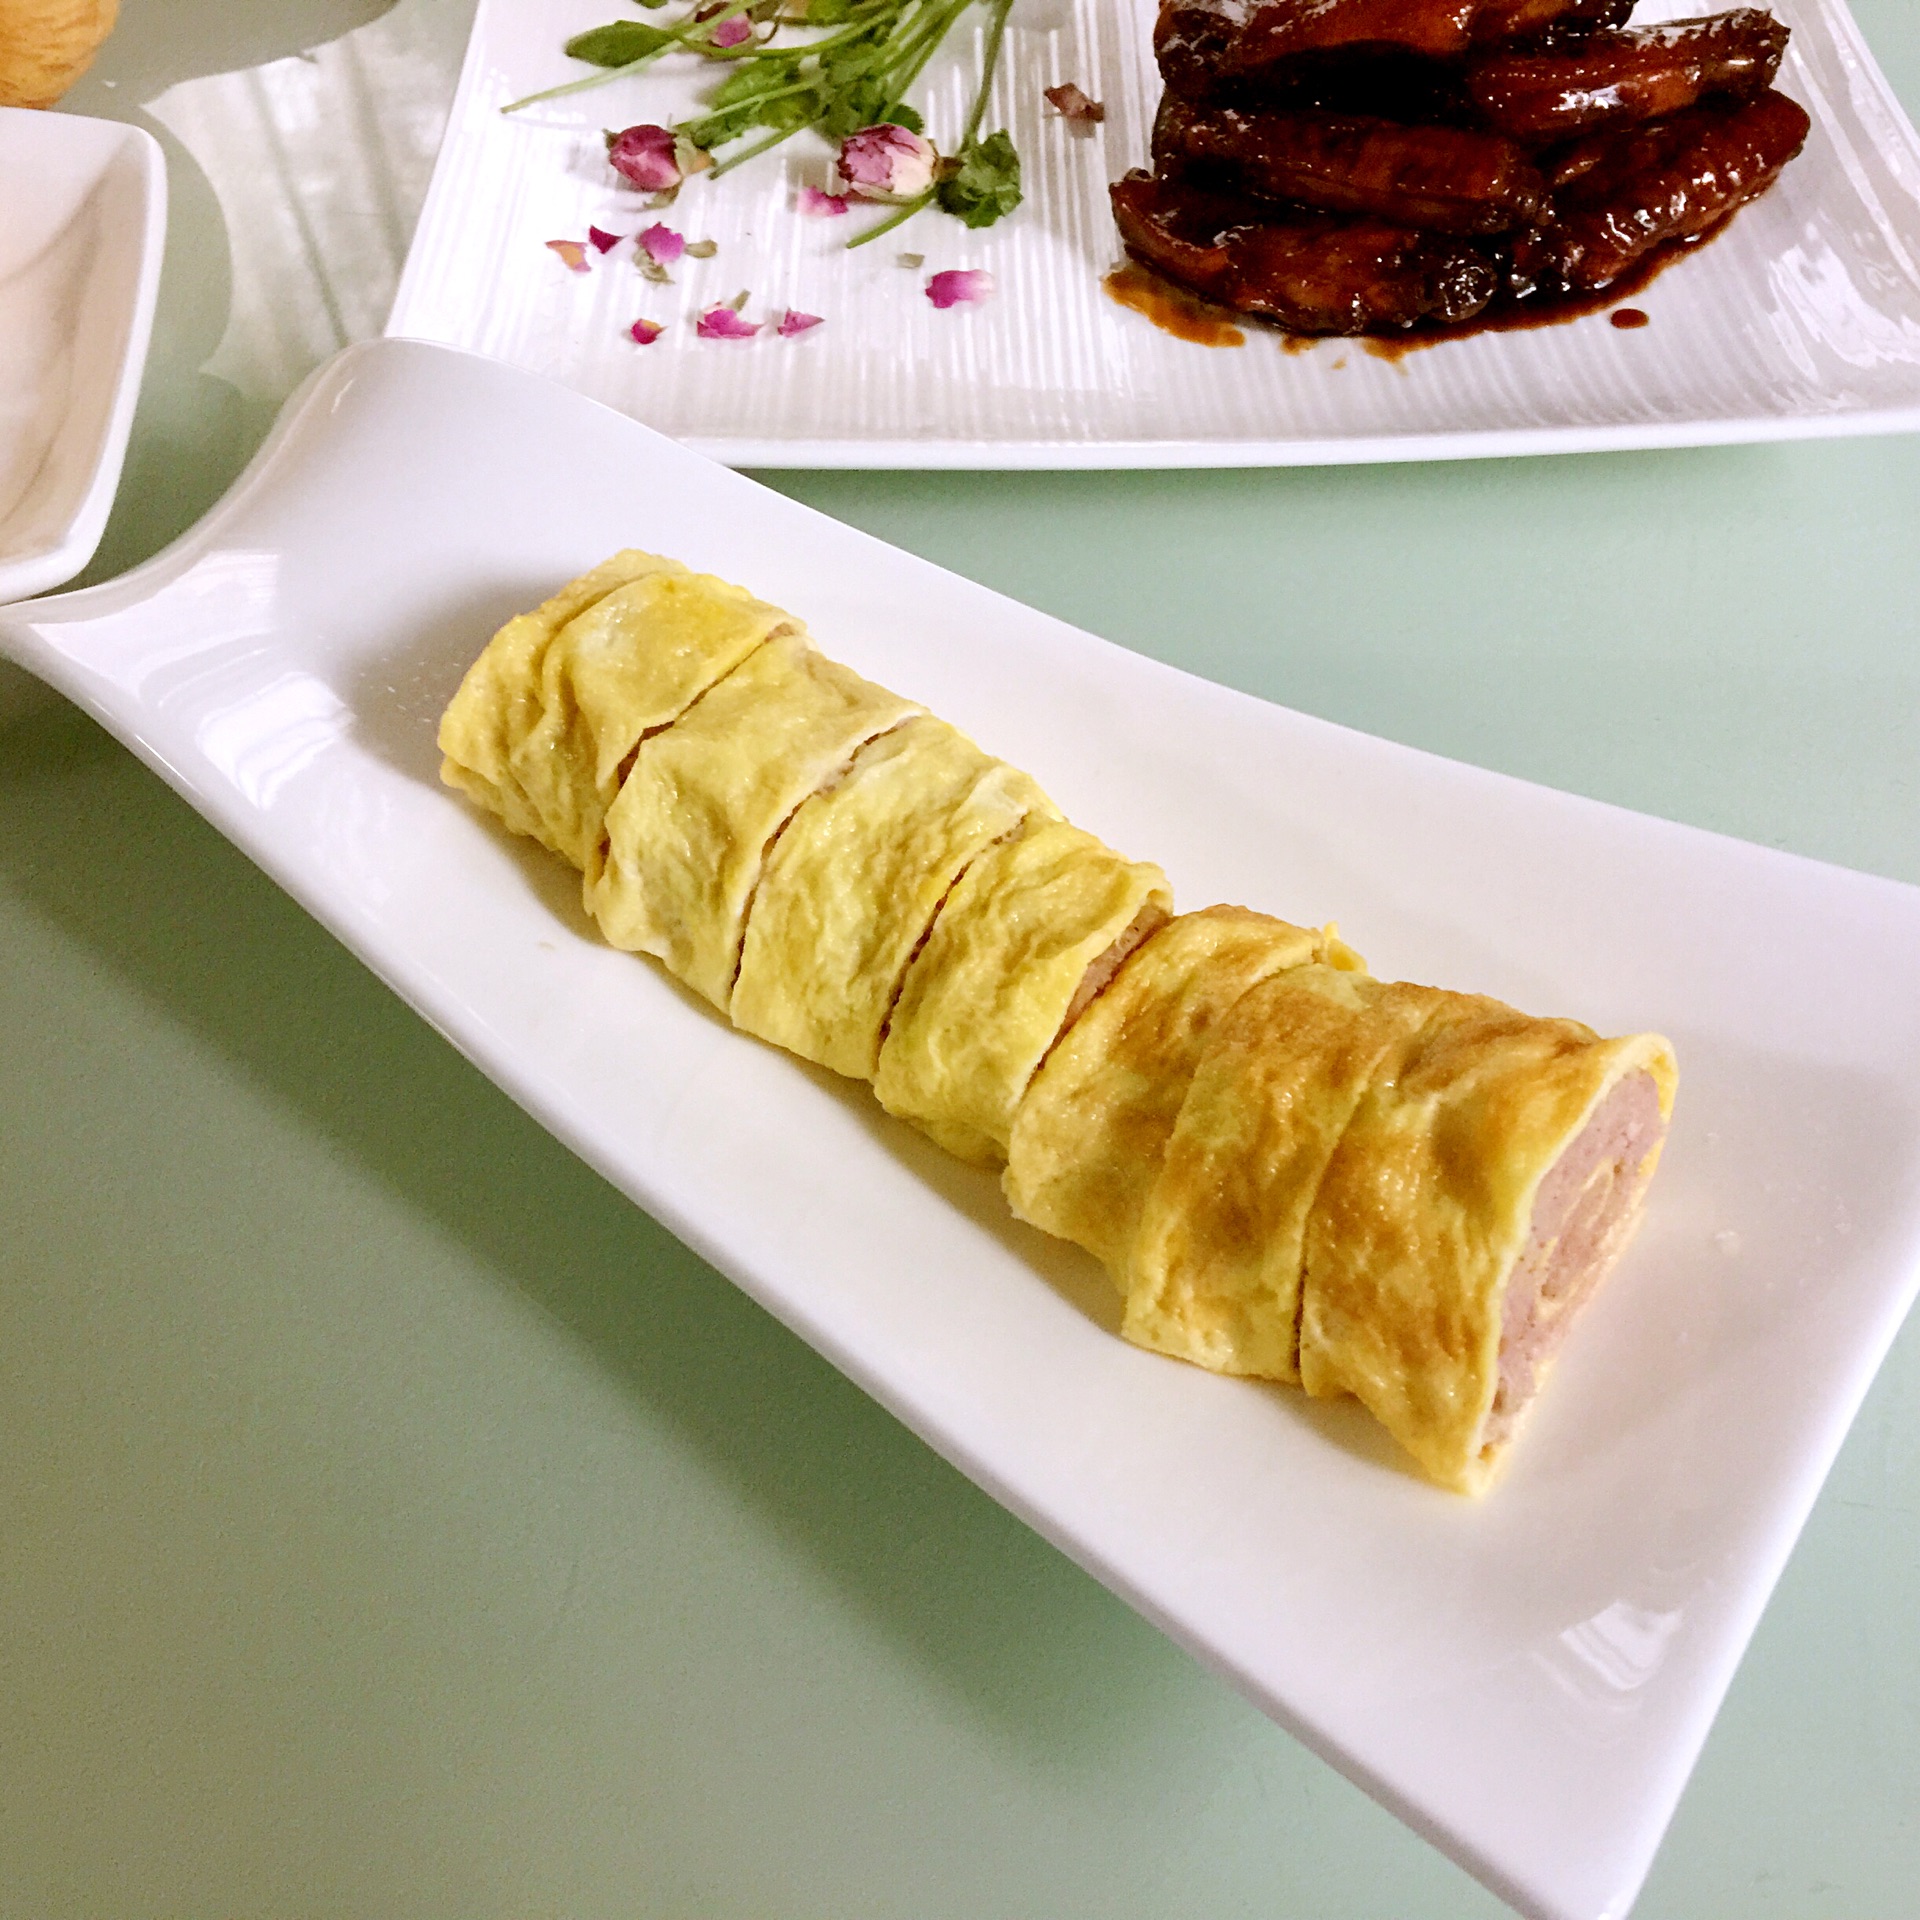 韓式煎蛋卷食譜、做法 | 安彥料理的Cook1Cook食譜分享